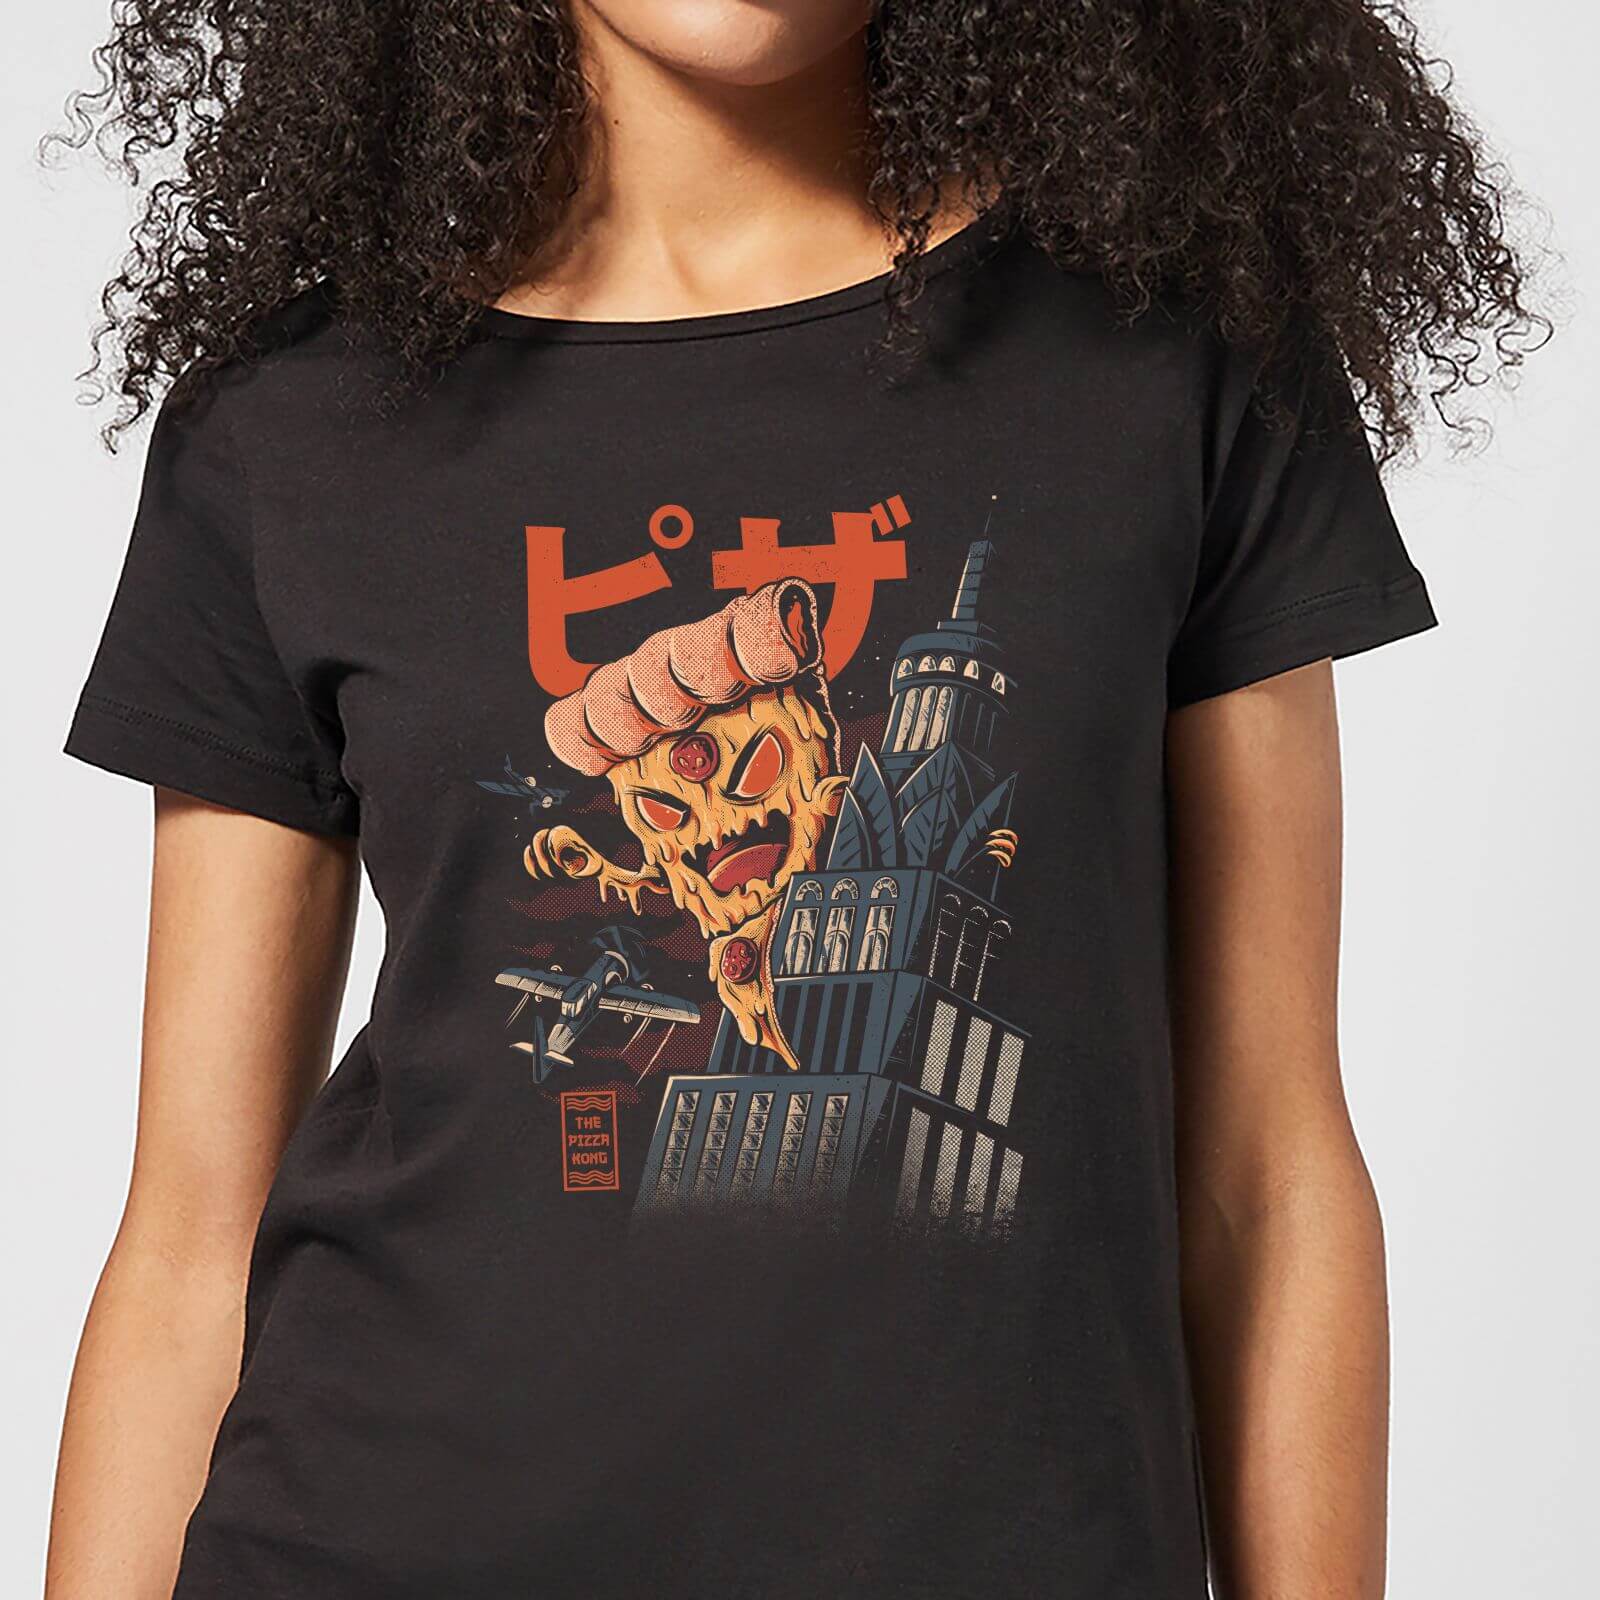 Ilustrata Pizza Kong Women's T-Shirt - Black - S - Black